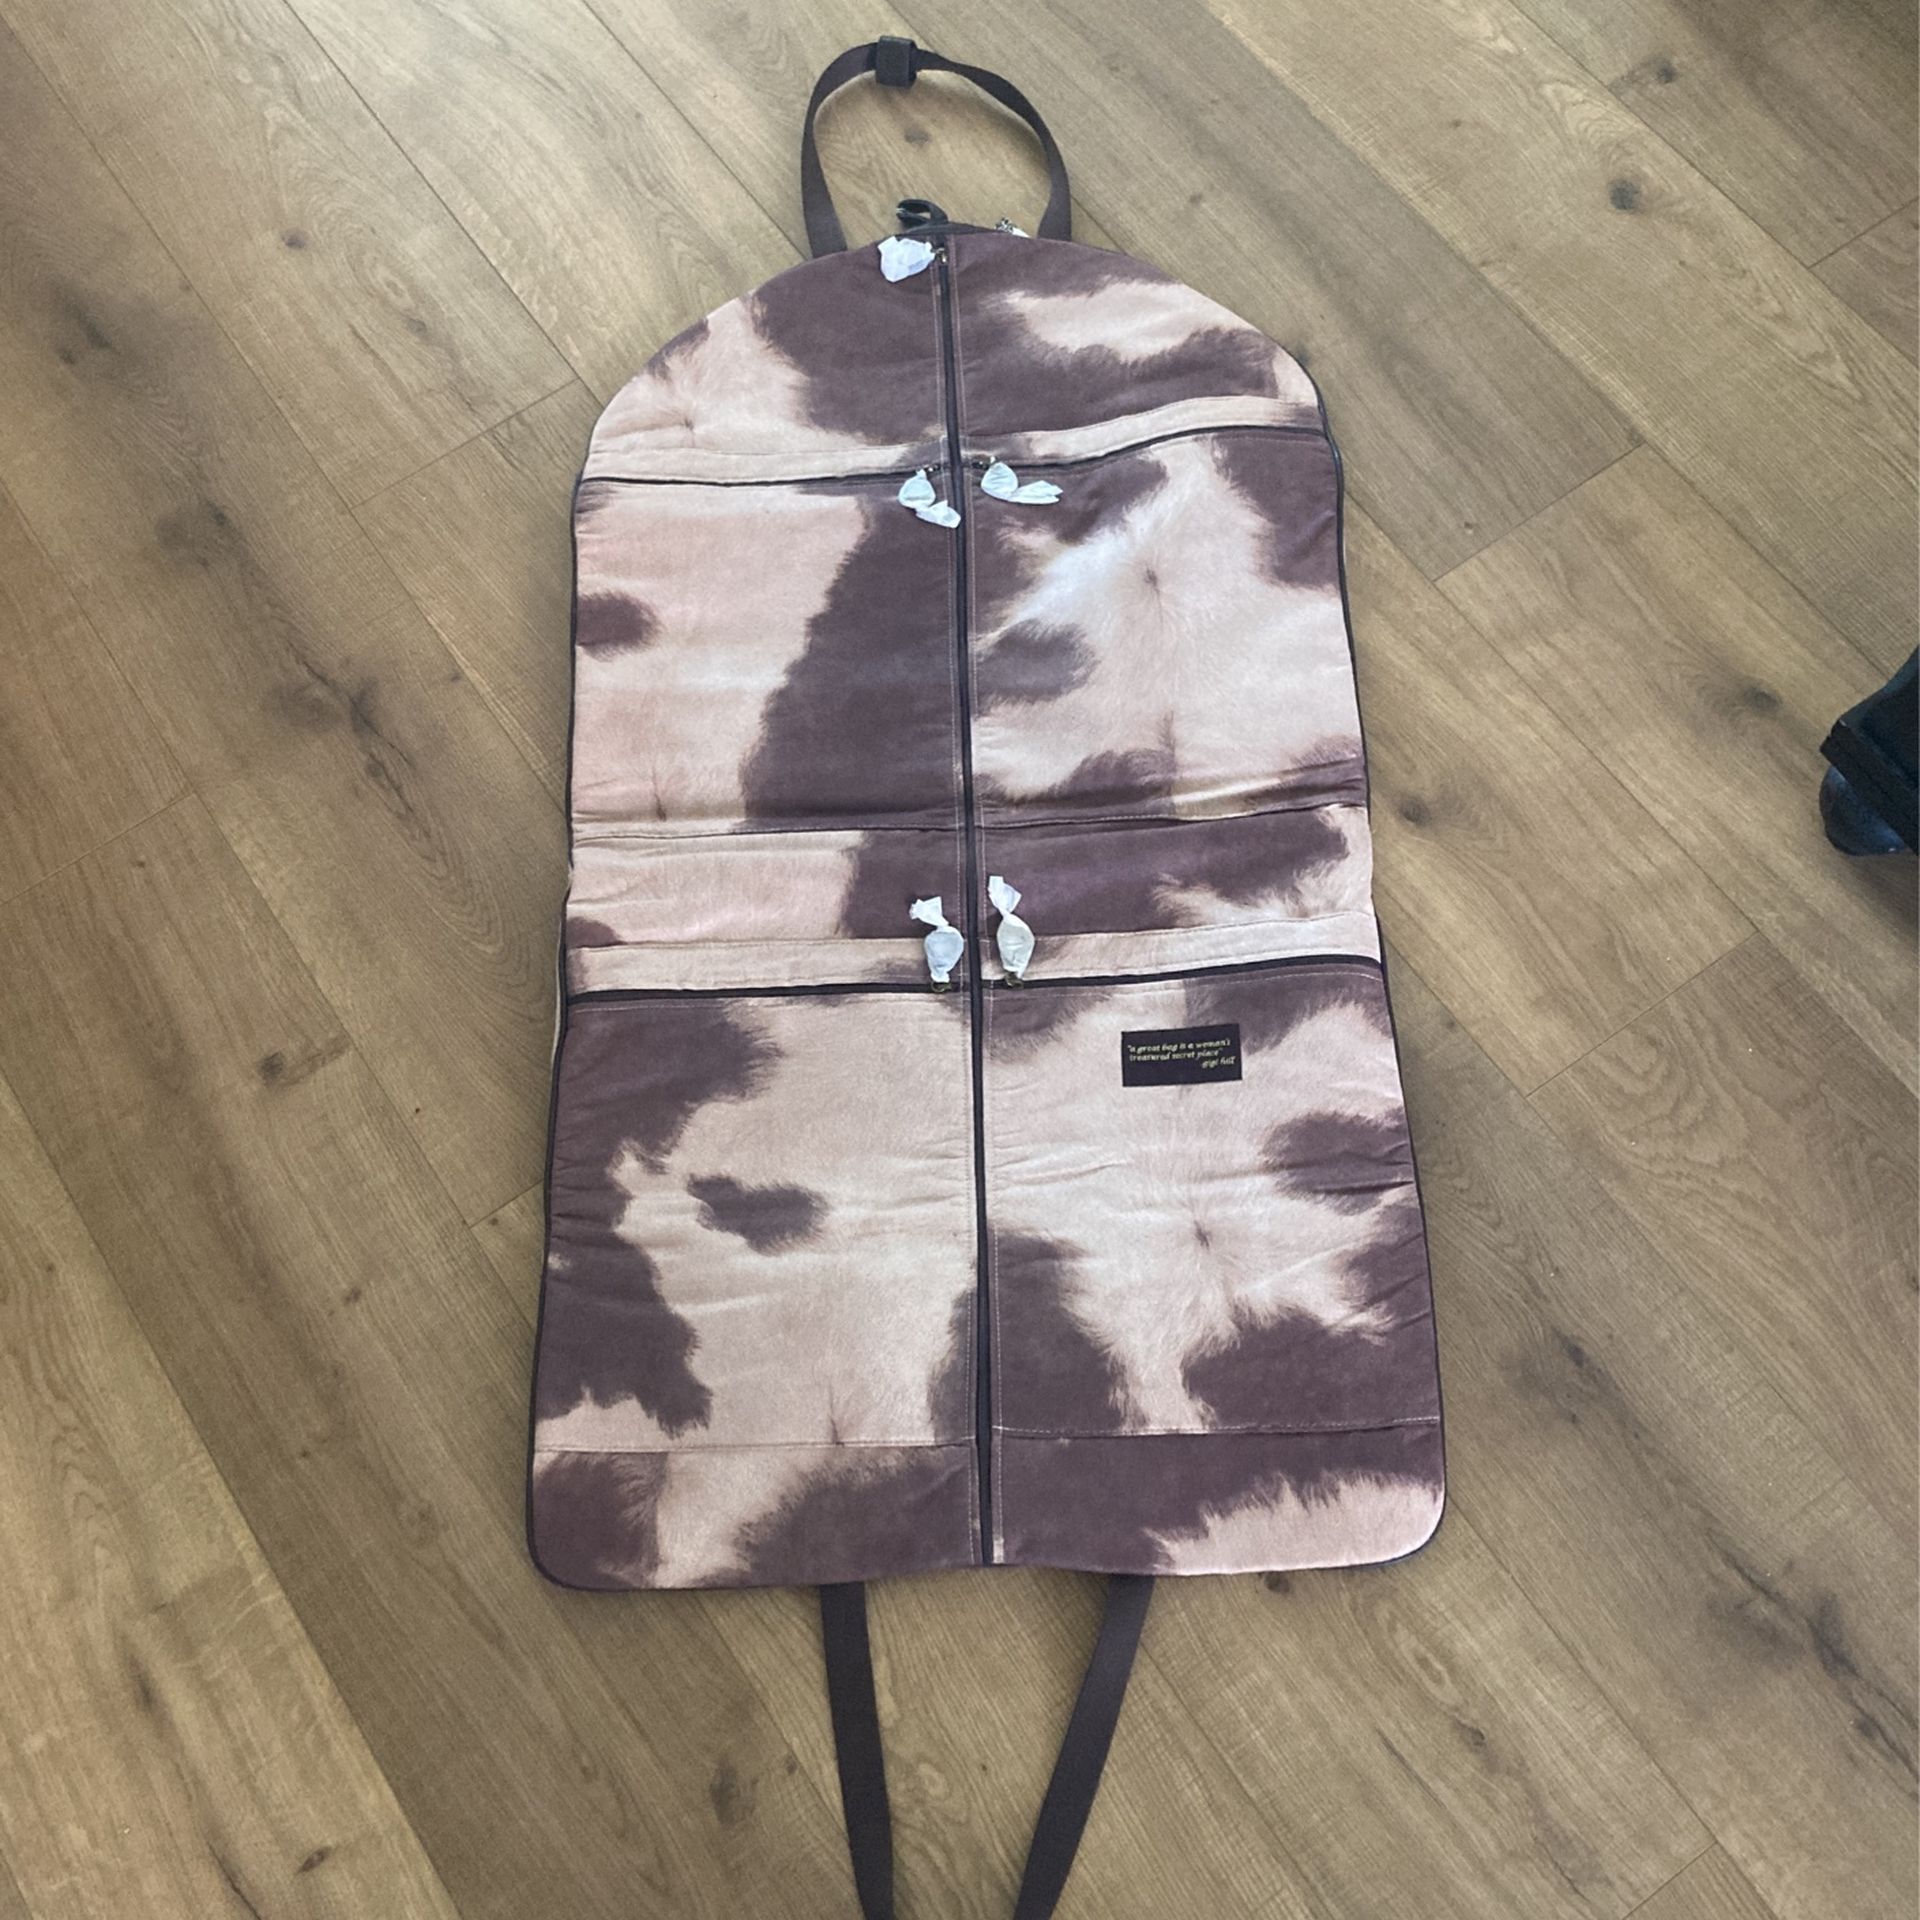 Garment Bag For Traveling 